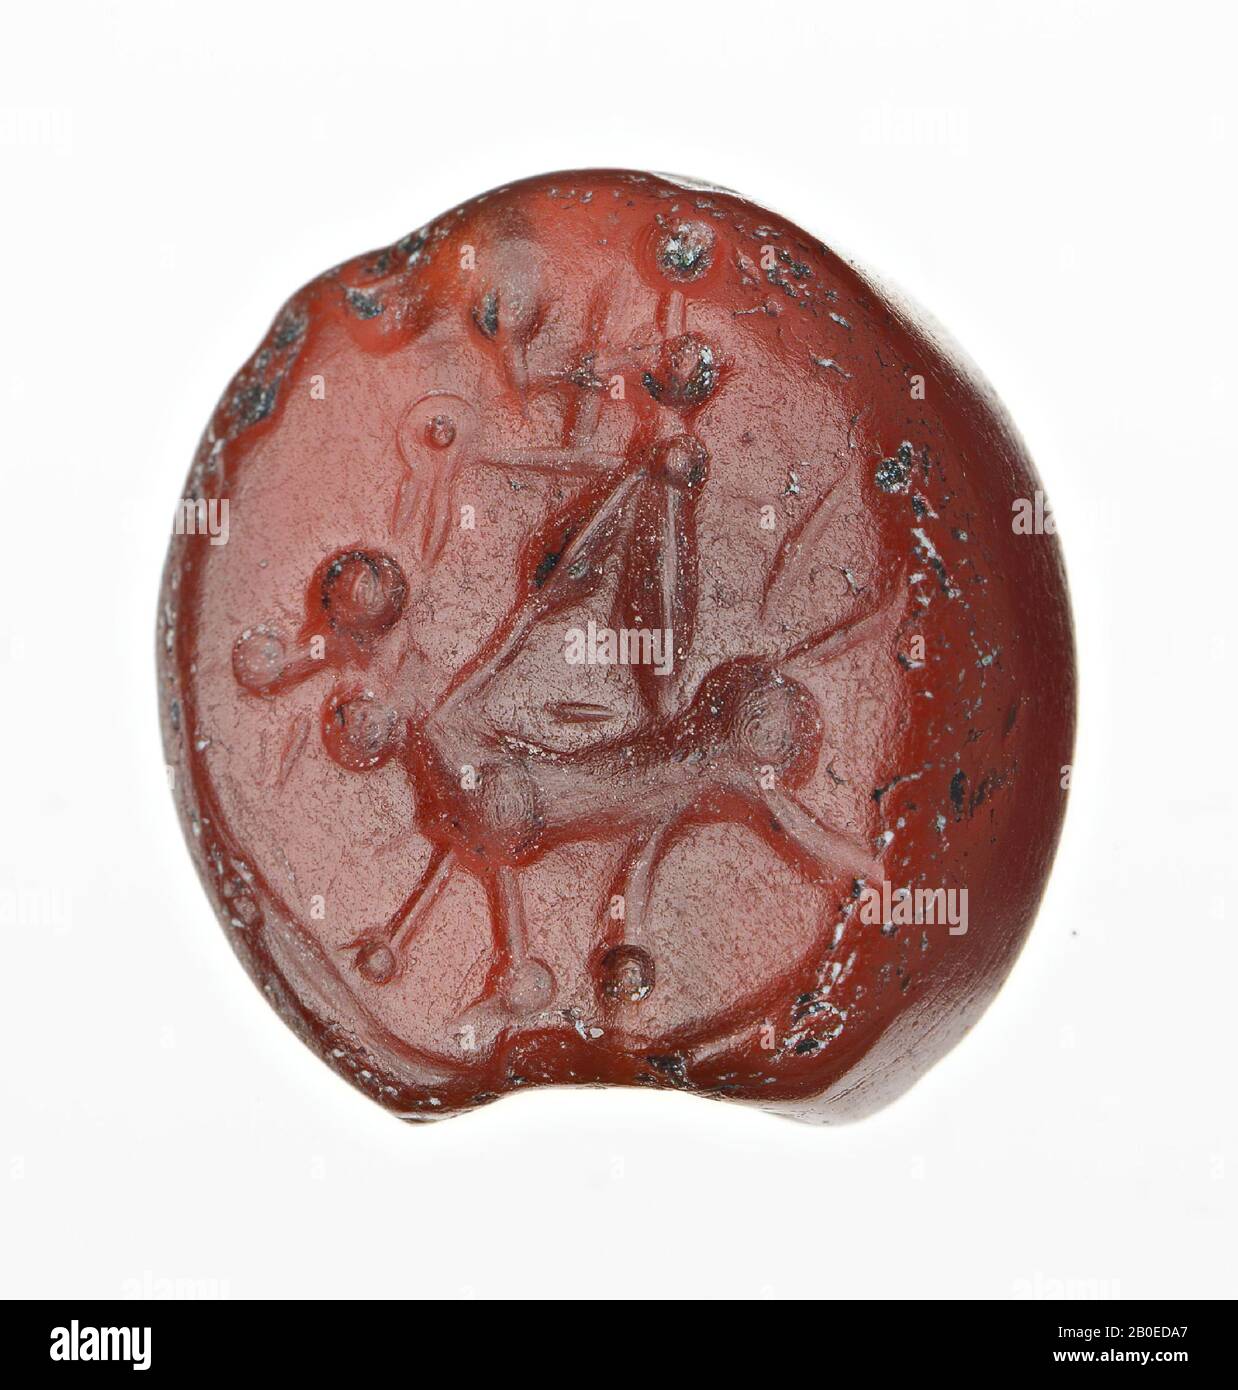 Ein unregelmäßig geformter Stempel mit einem Bild eines viereckigen oder sagenumwobenen Tieres mit einer männlichen Figur, die nach links blickt., Siegel, Stein, karnelisch, L 1,2 cm, D 1,3 cm, Iran Stockfoto